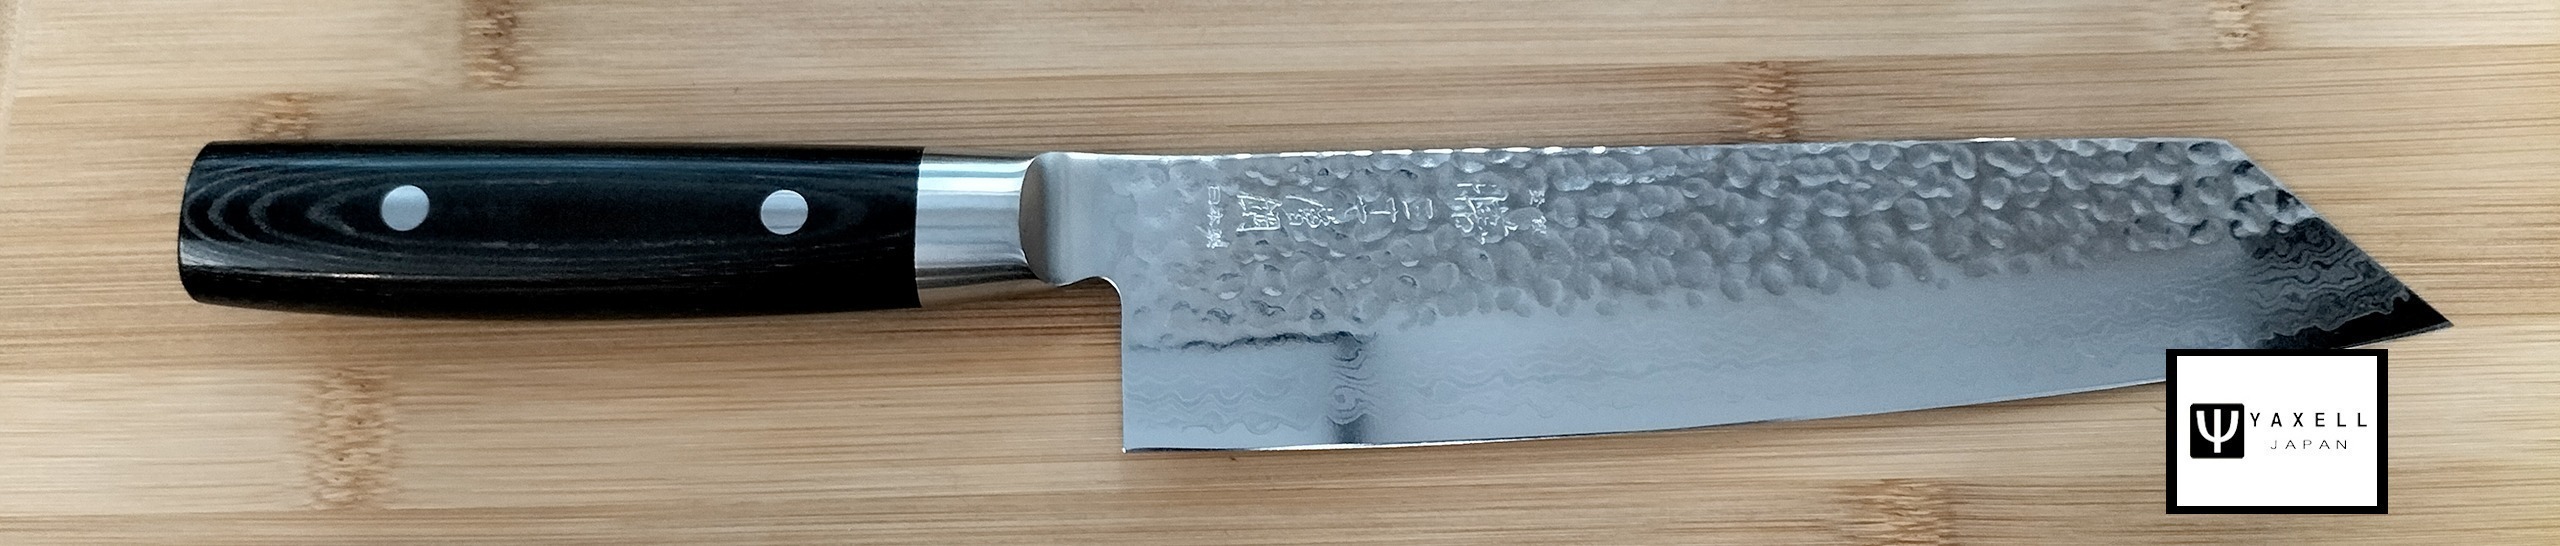 couteau japonais yaxell zen couteau